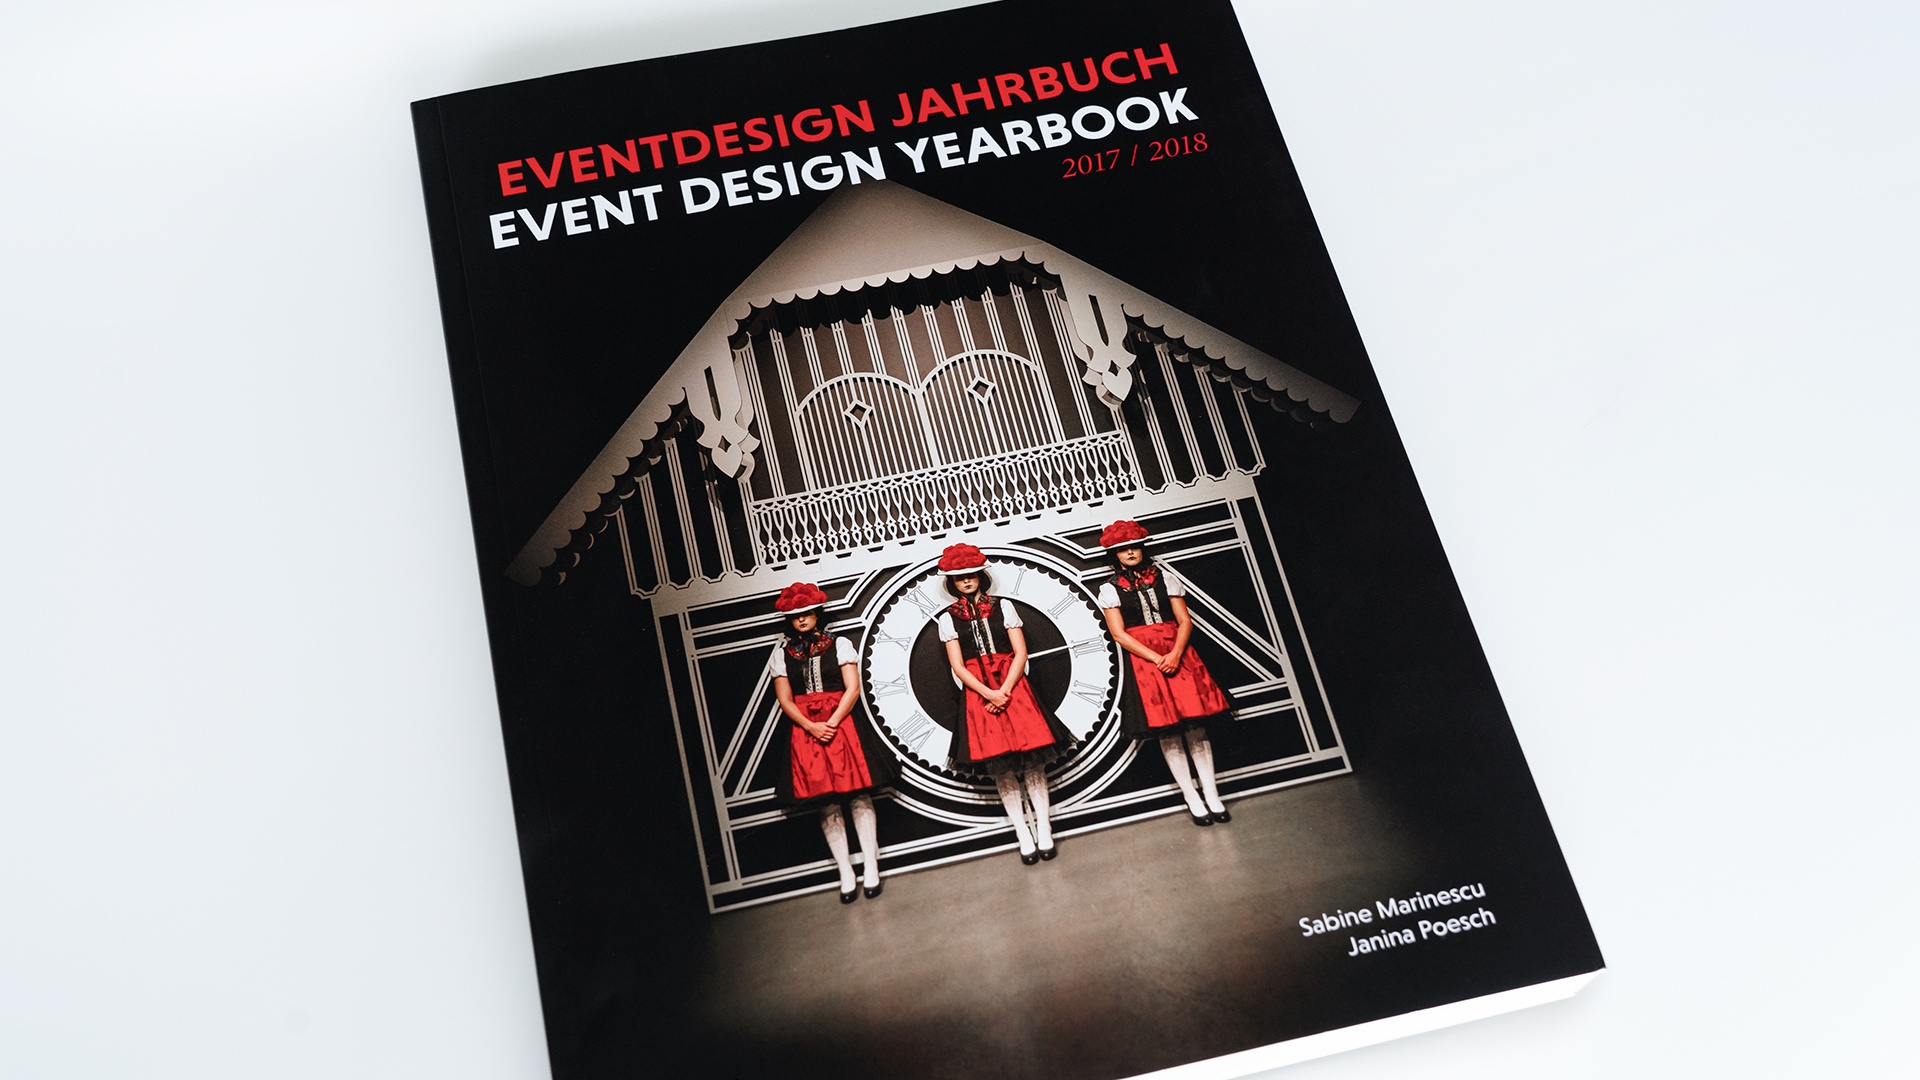 Eventdesign Jahrbuch 2017/2018